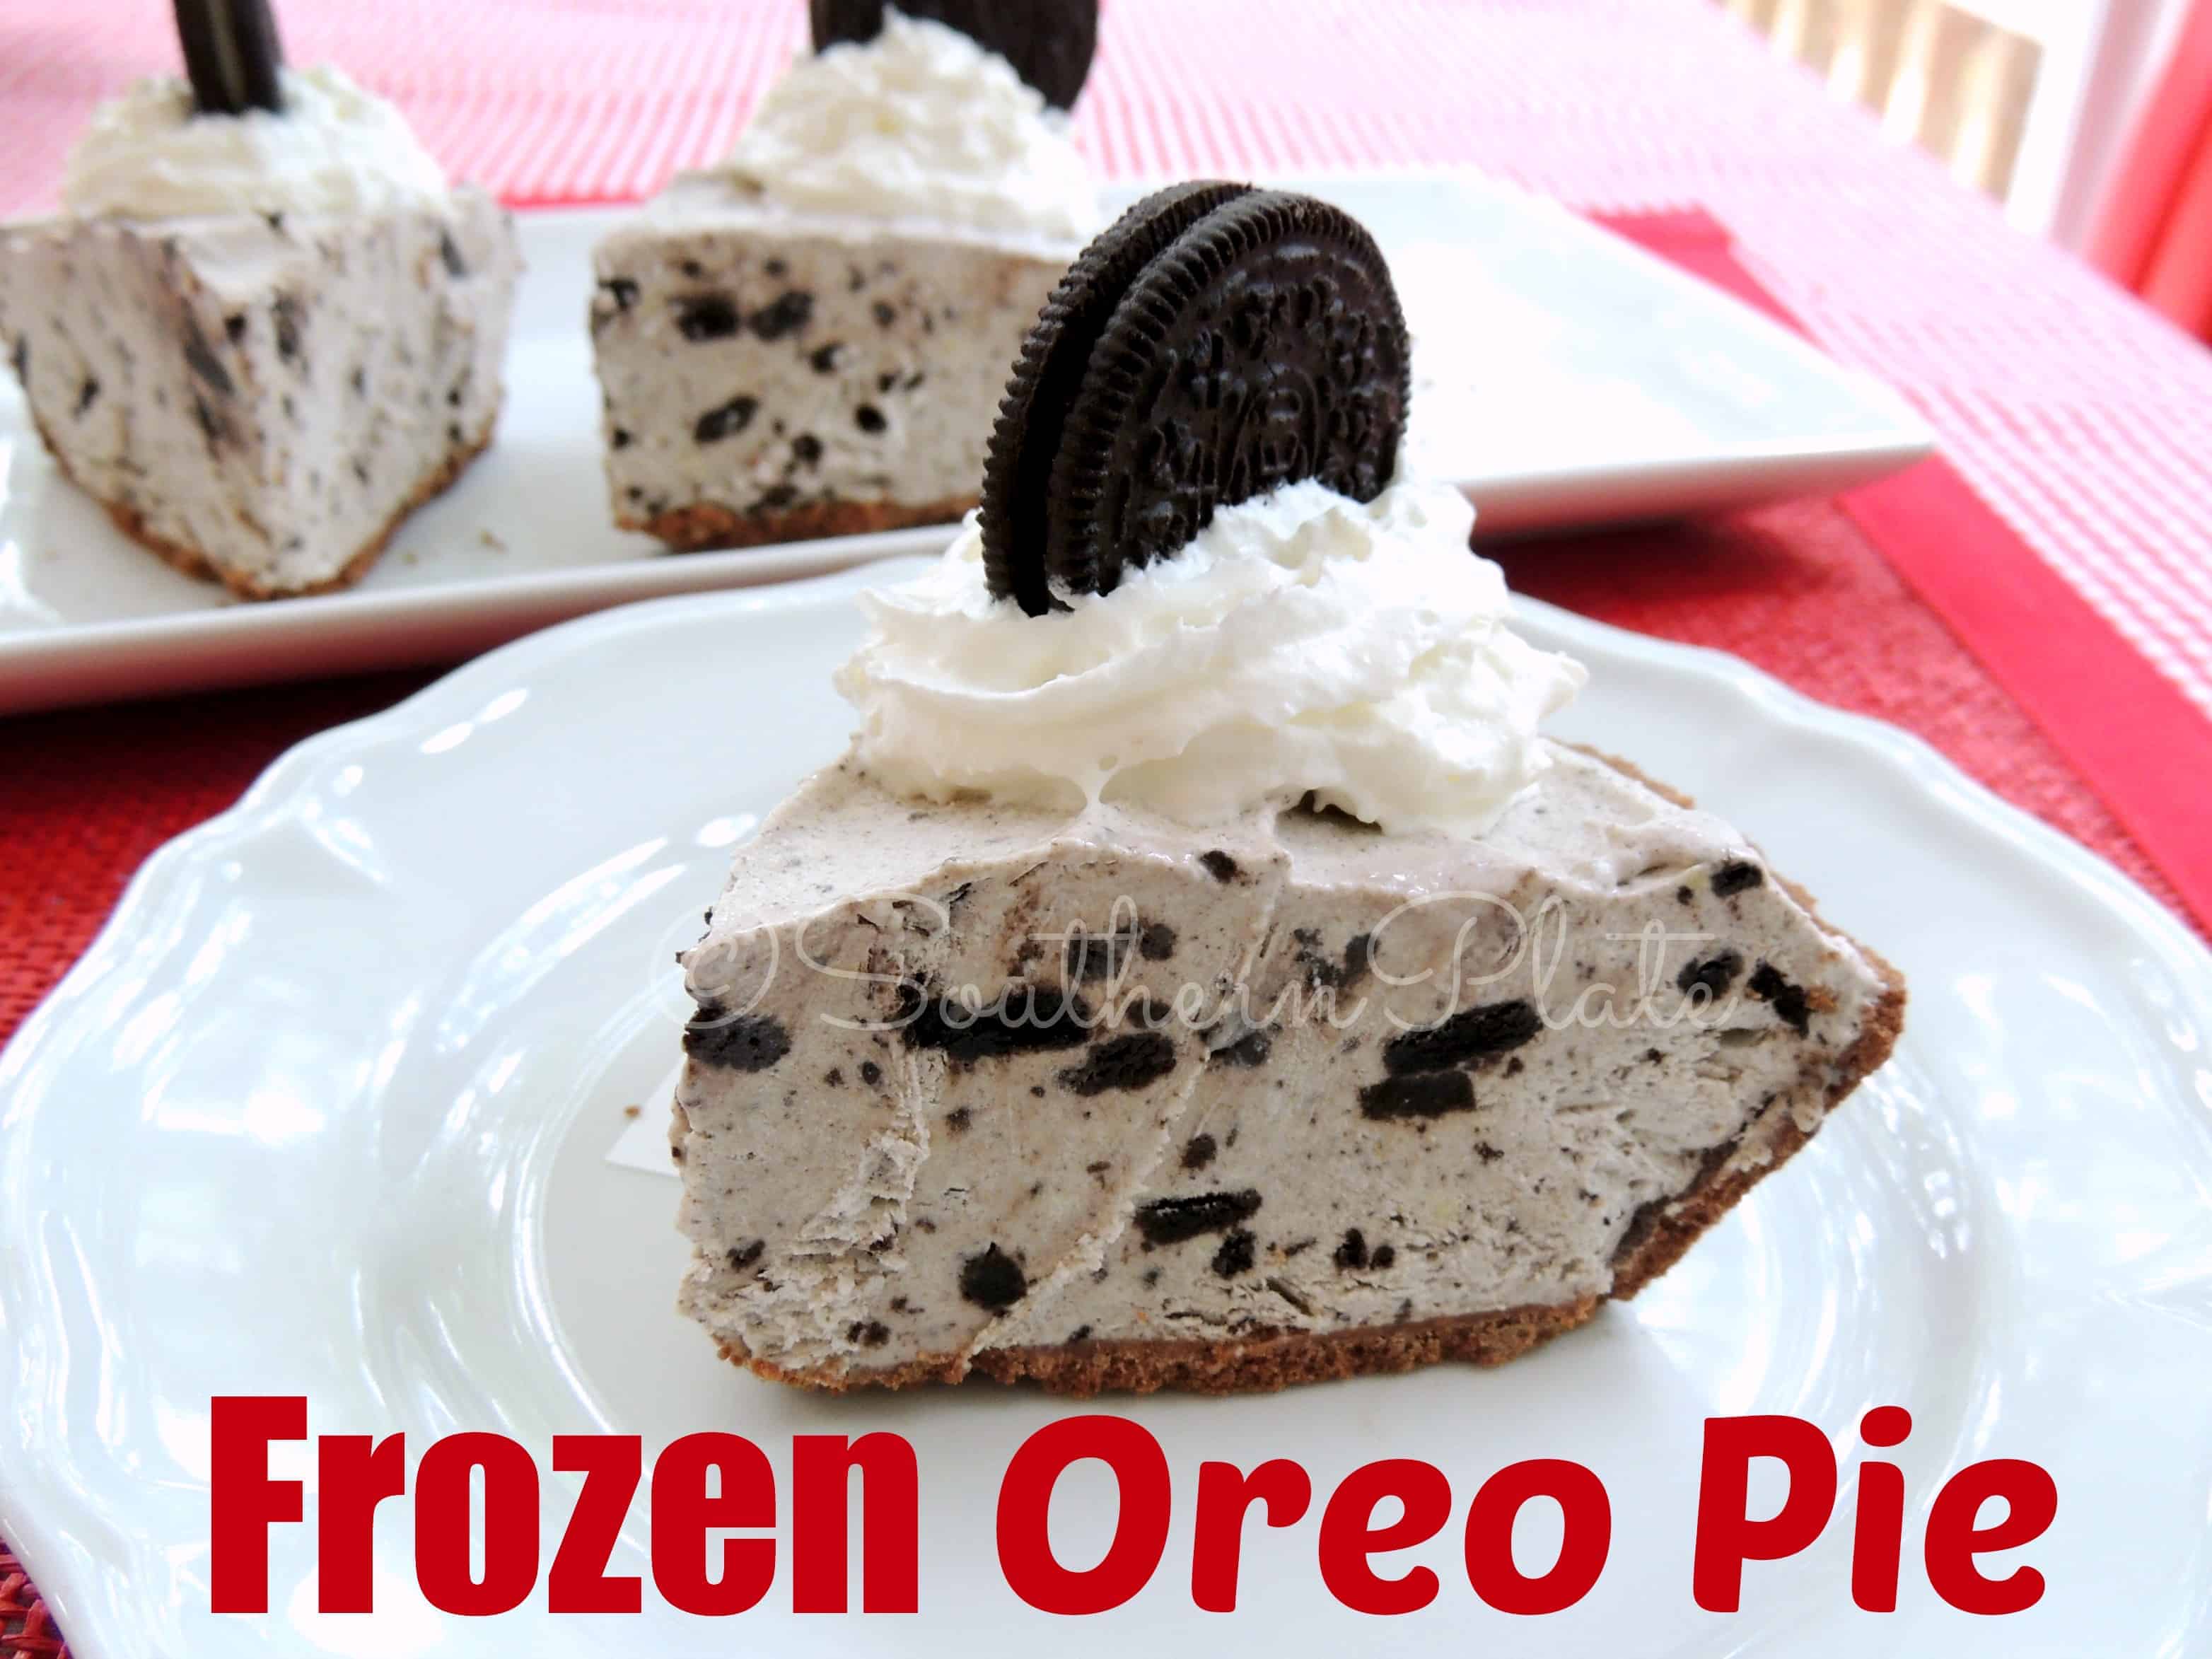 Slice of frozen Oreo pie.